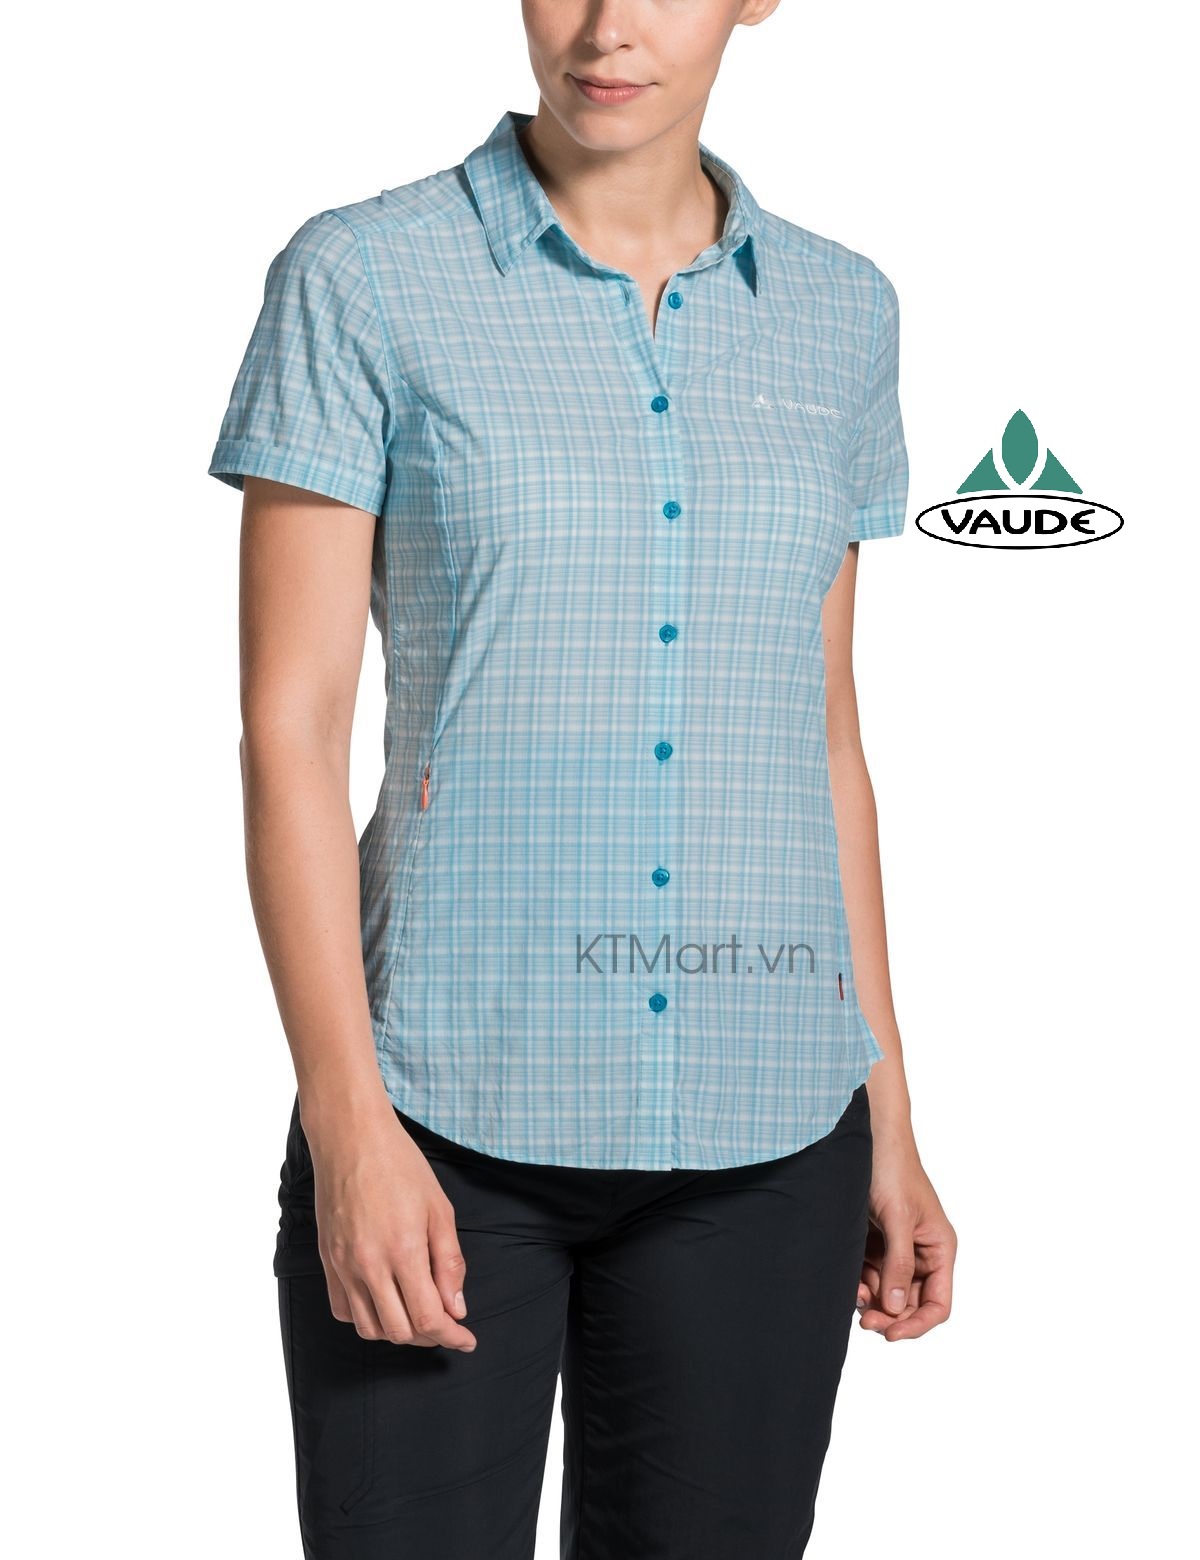 Vaude Women’s Seiland Shirt II 41315 Vaude size S/38